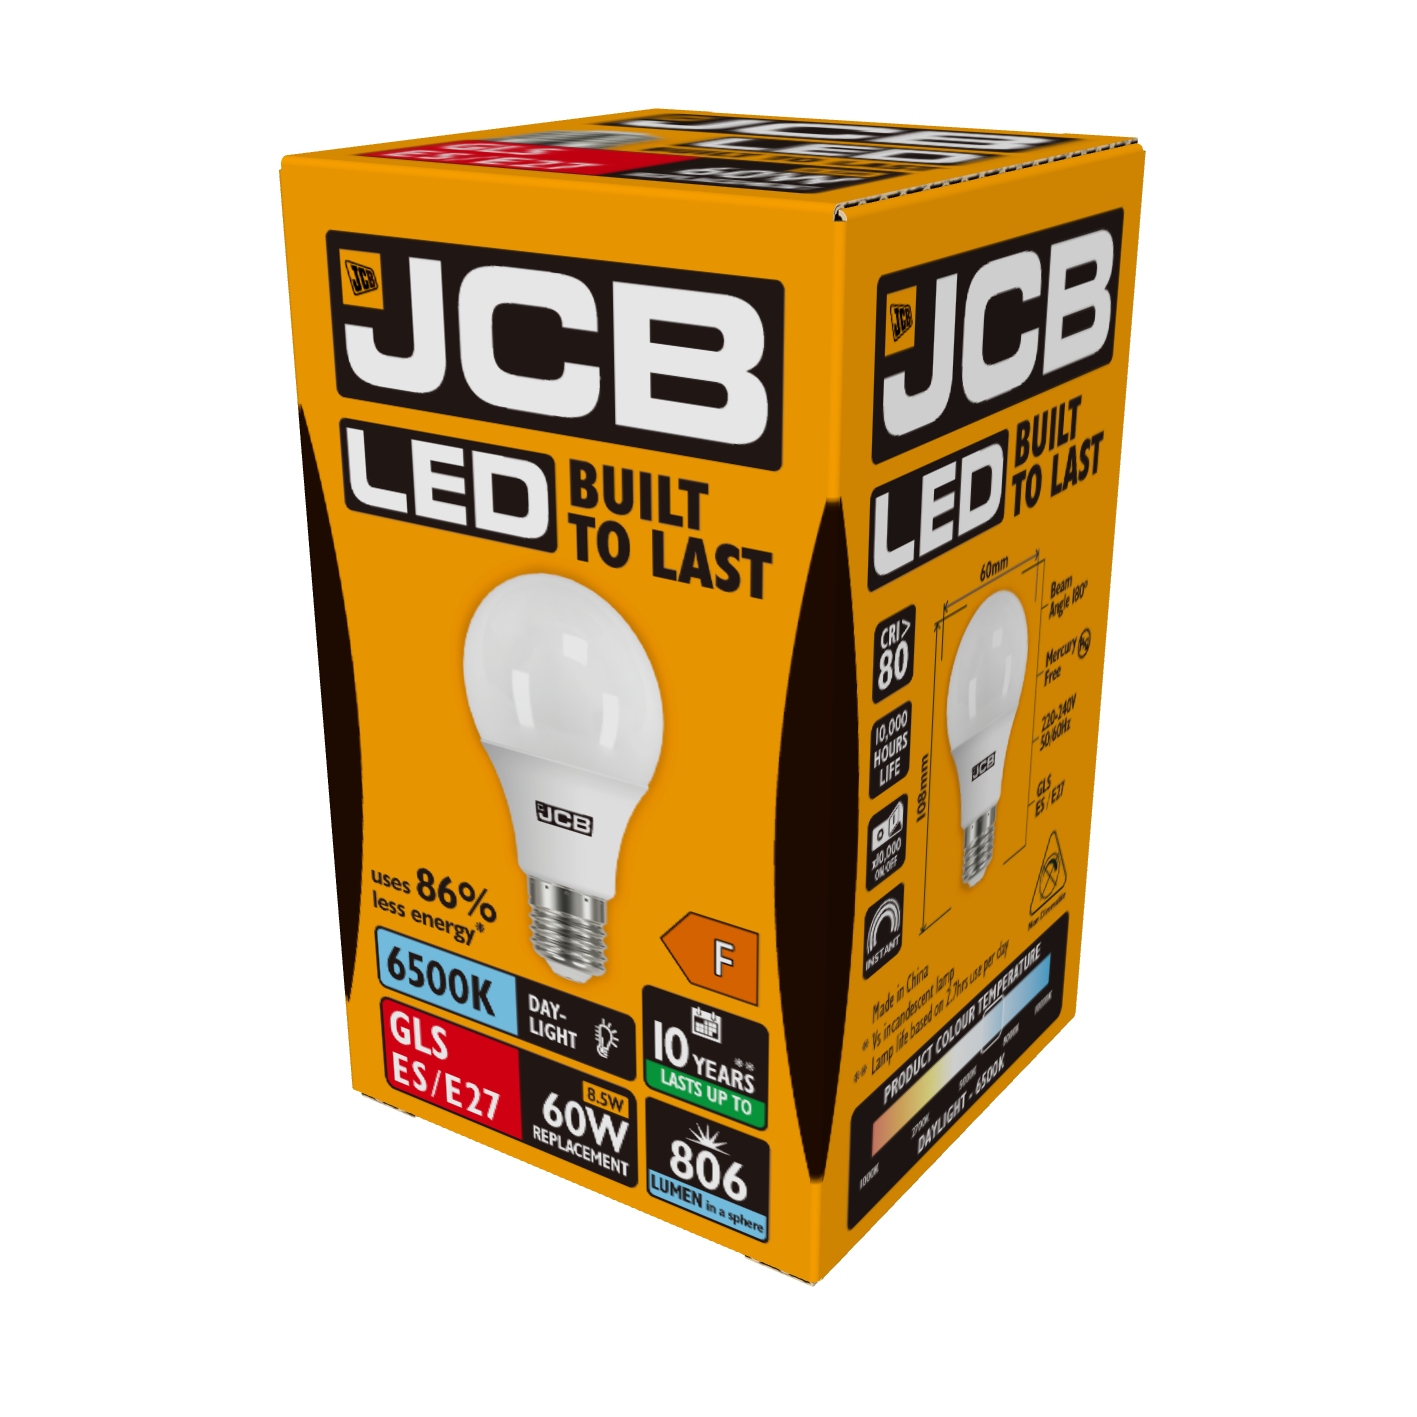 JCB LED GLS E27 (ES) 806lm 8,5W 6.500K (Tageslicht), Packung mit 1 Stück